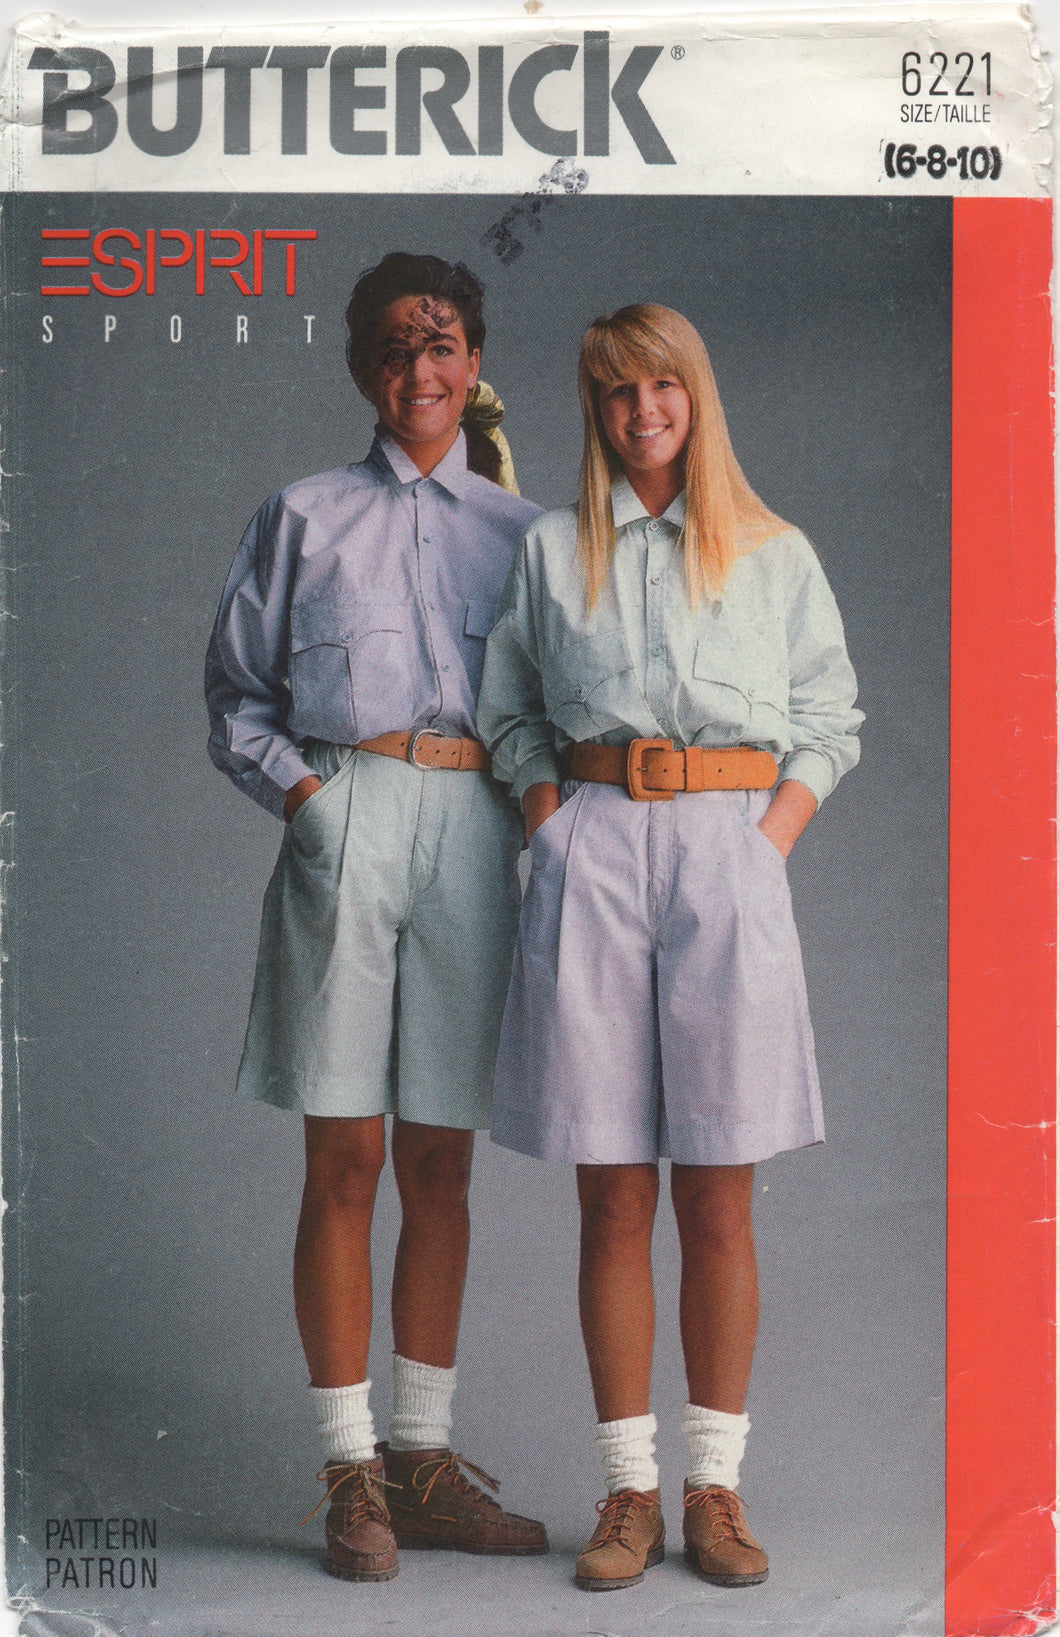 1988 Butterick ESPIRIT Oversize Shirt and Shorts - Bust 30.5-31.5-32.5